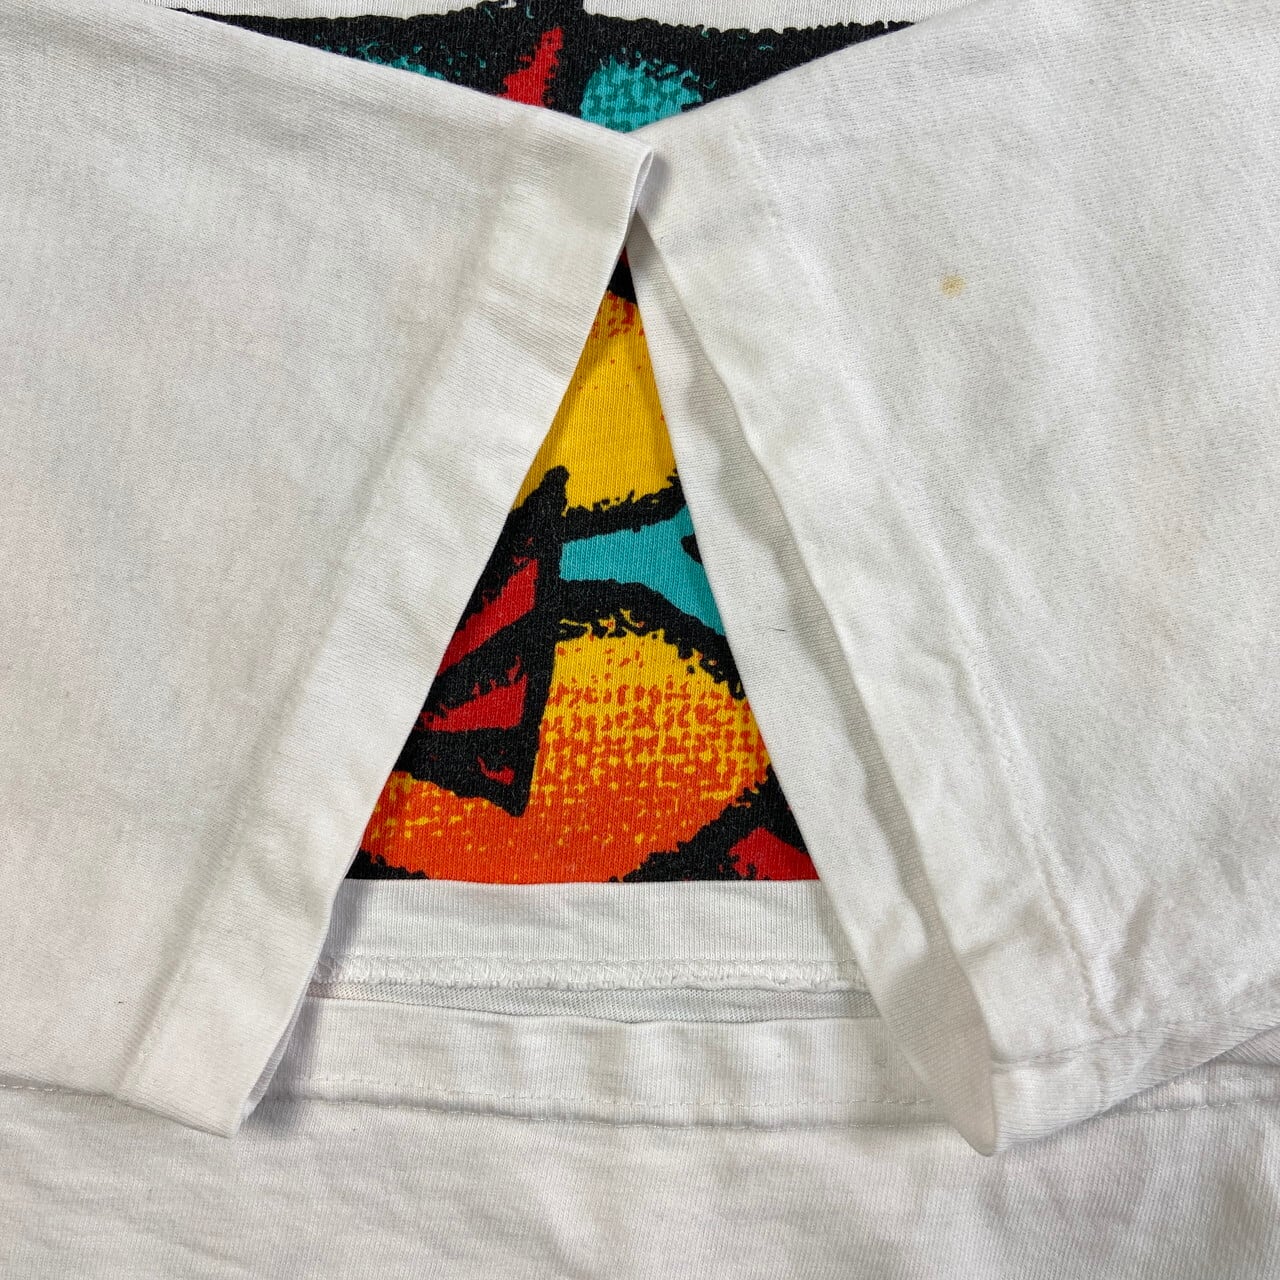 80's 90's クレイジーシャツ  サンディエゴ　シングルステッチTシャツ